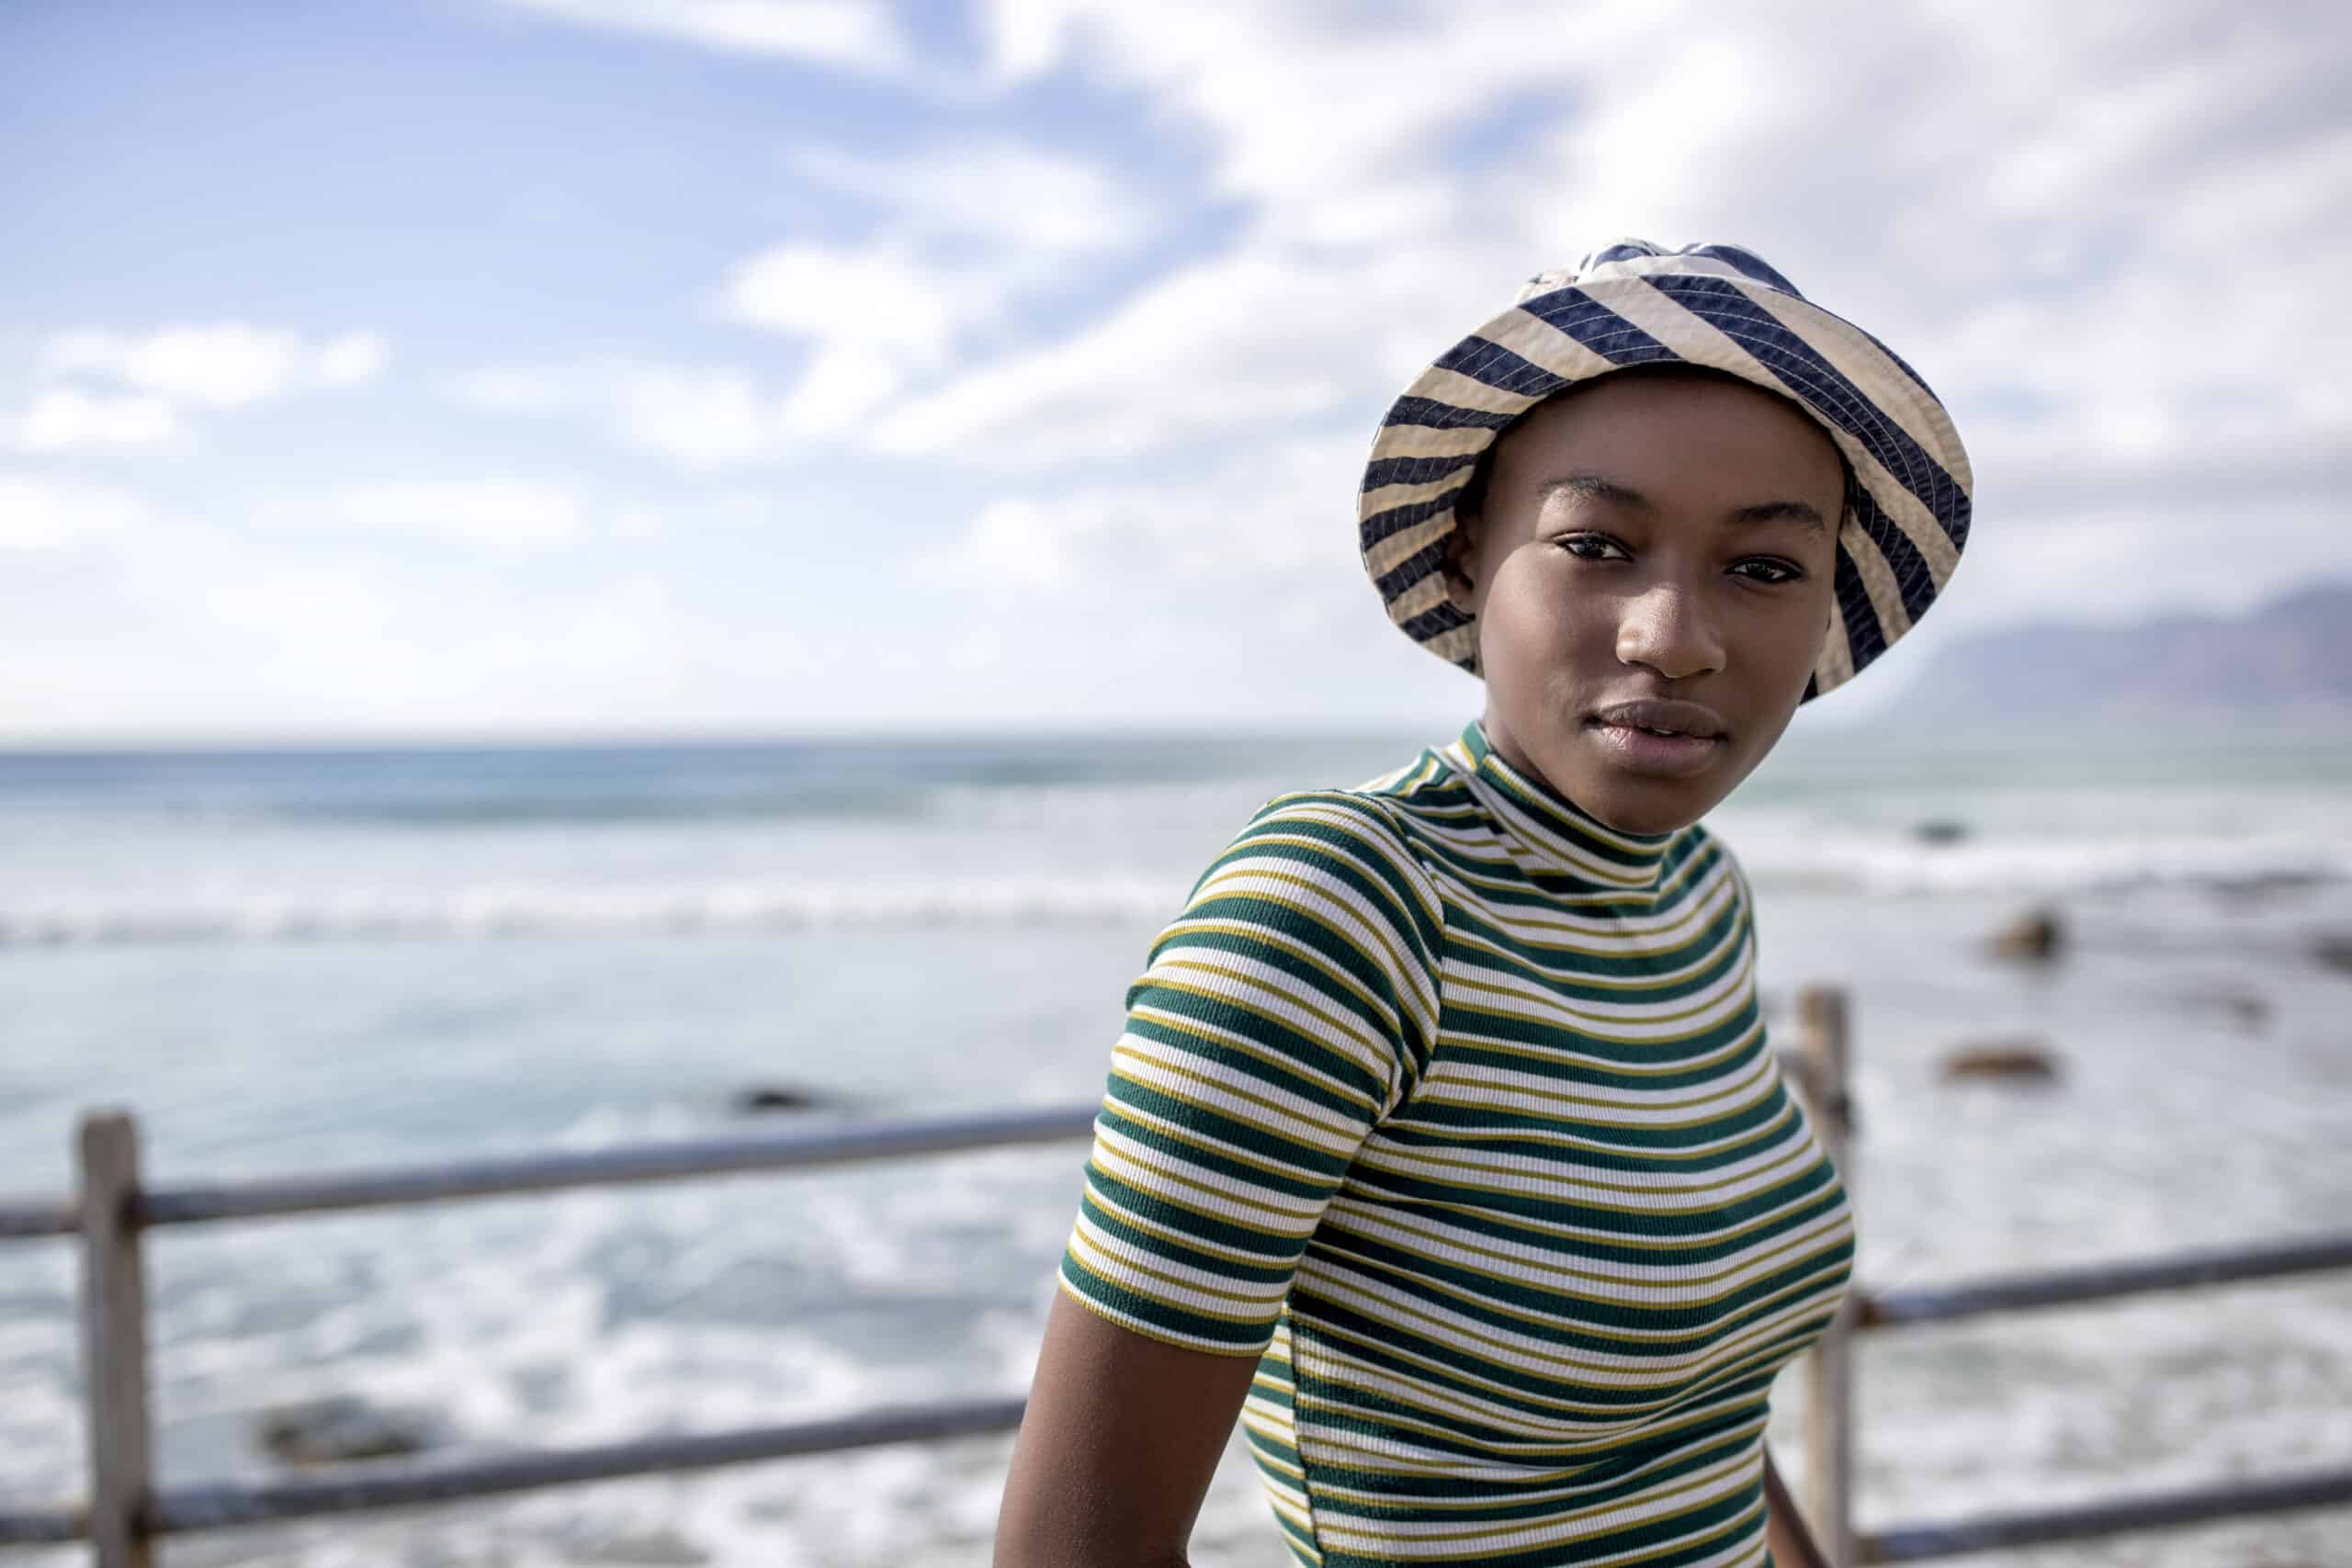 Eine junge Frau mit gestreiftem Hut und Hemd steht an einem Geländer am Meer, im Hintergrund sind das ruhige Meer und die Berge zu sehen. © Fotografie Tomas Rodriguez